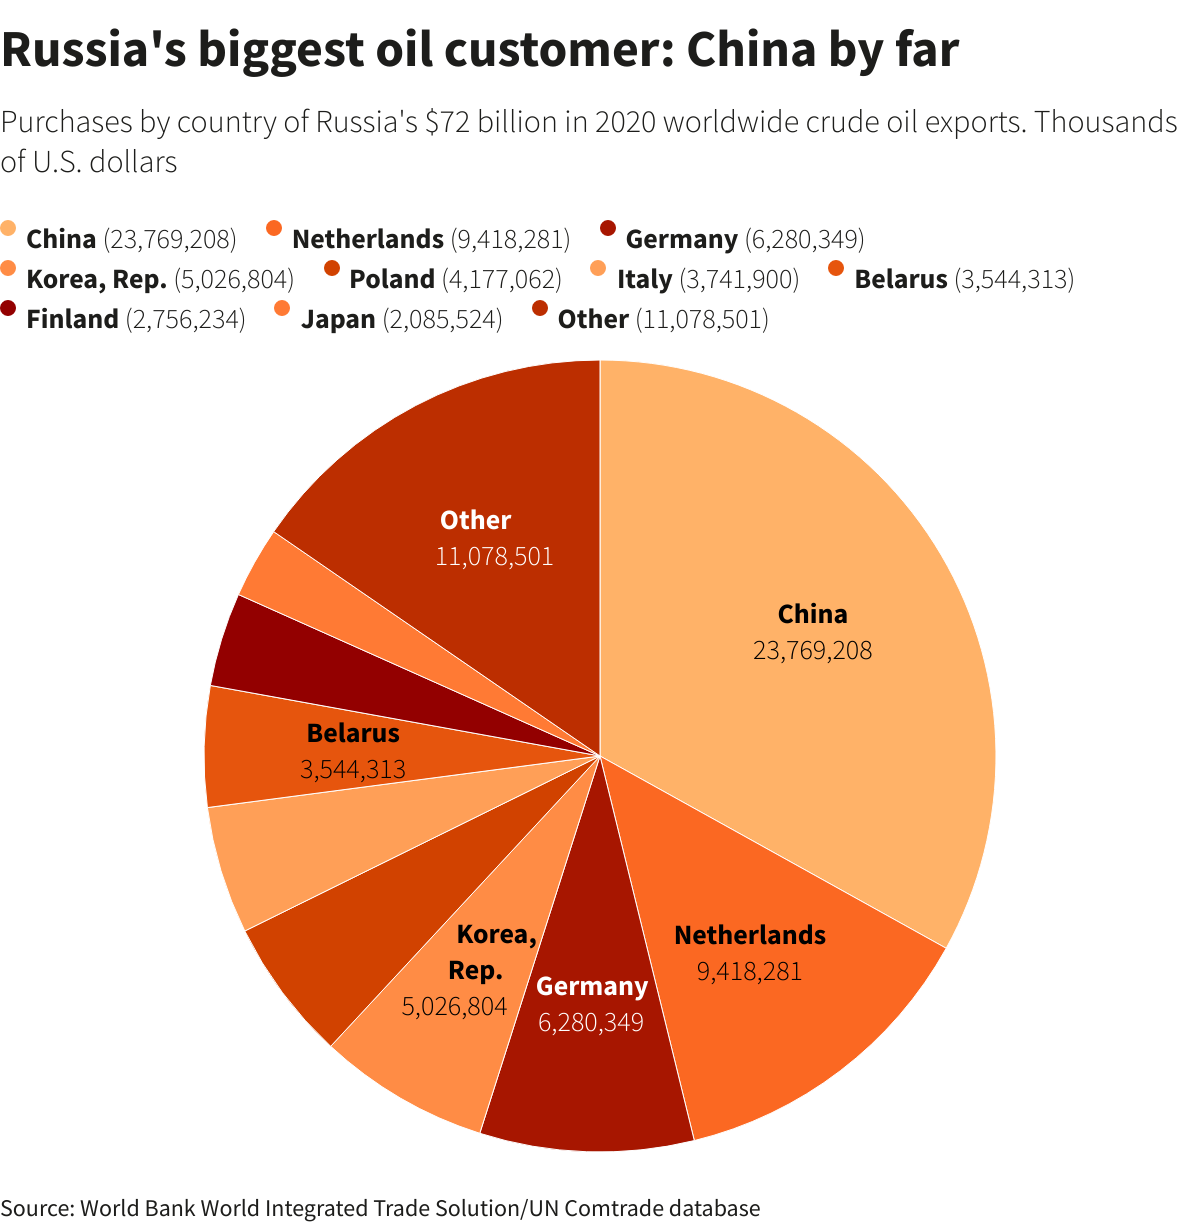 Russia's top oil export destinations in 2020